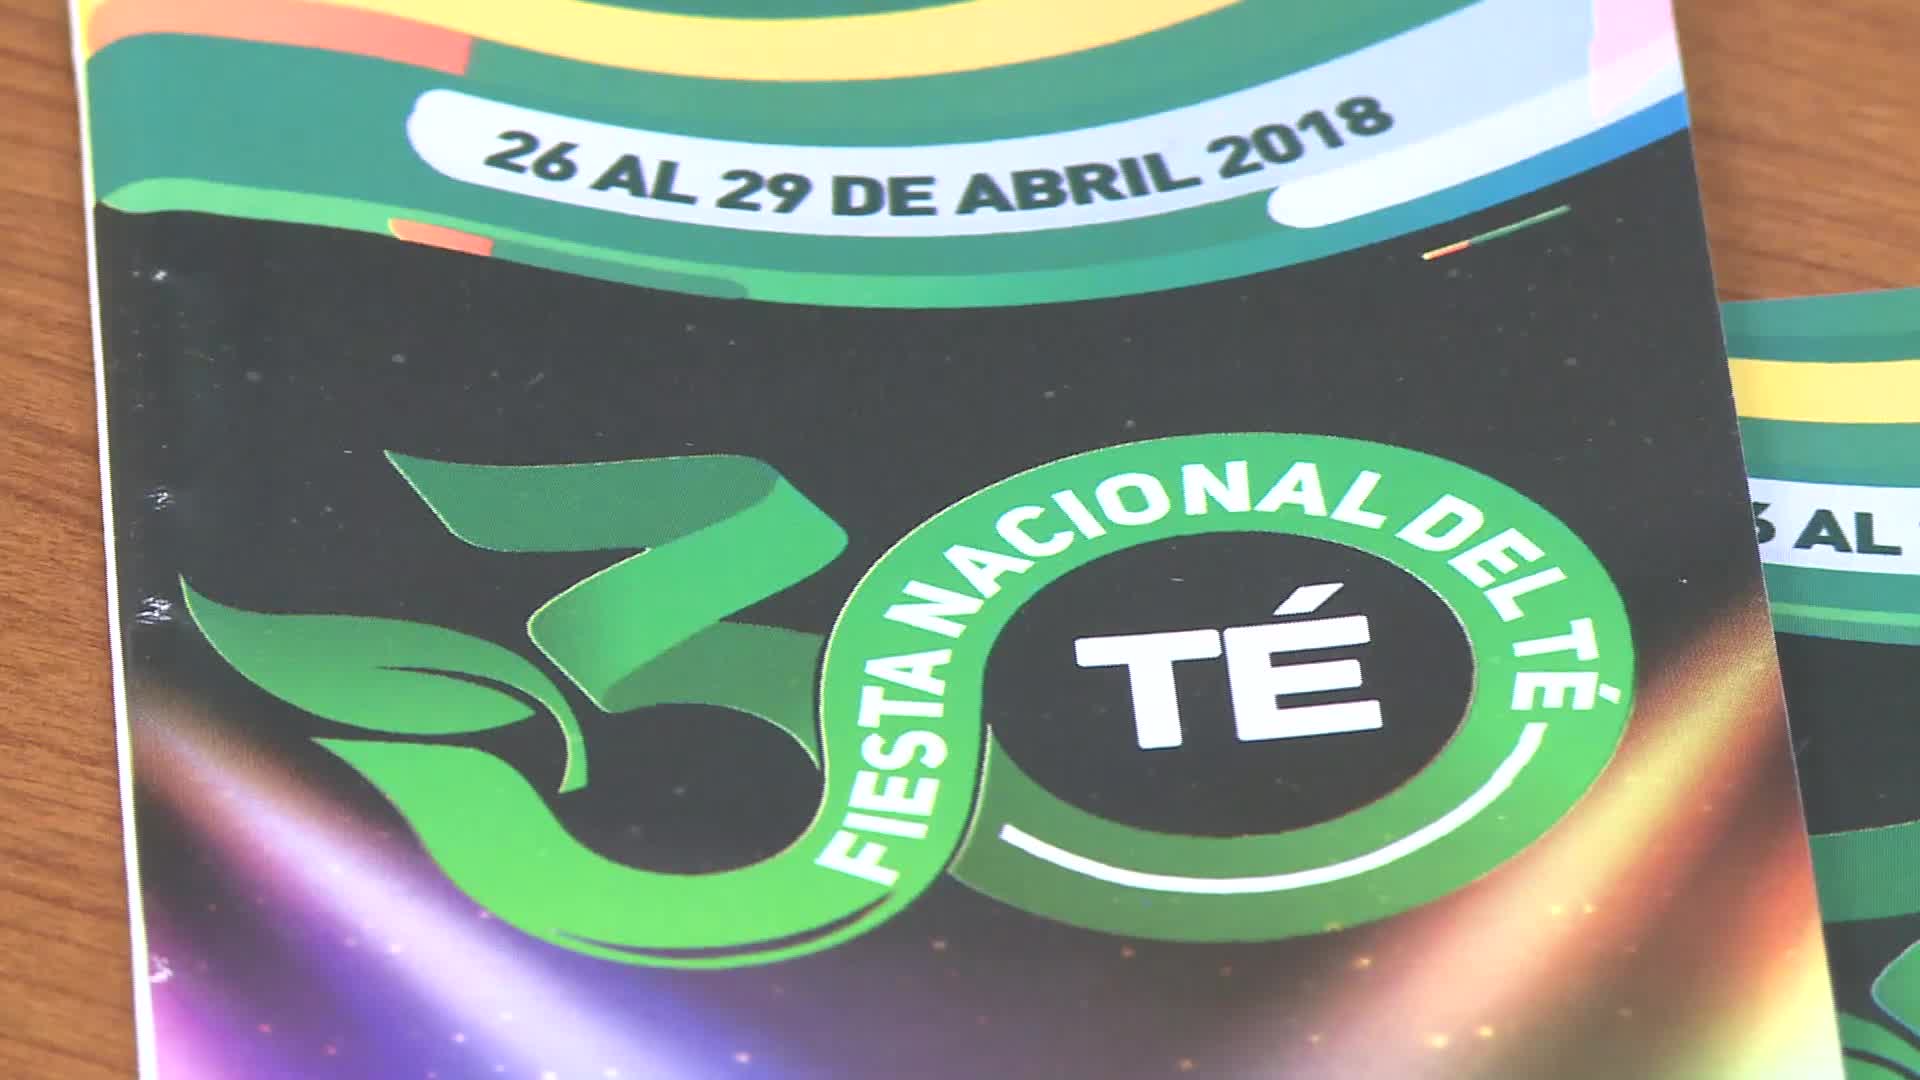 Del 26 al 29 de abril 30° Fiesta Nacional del Té en Campo Viera 